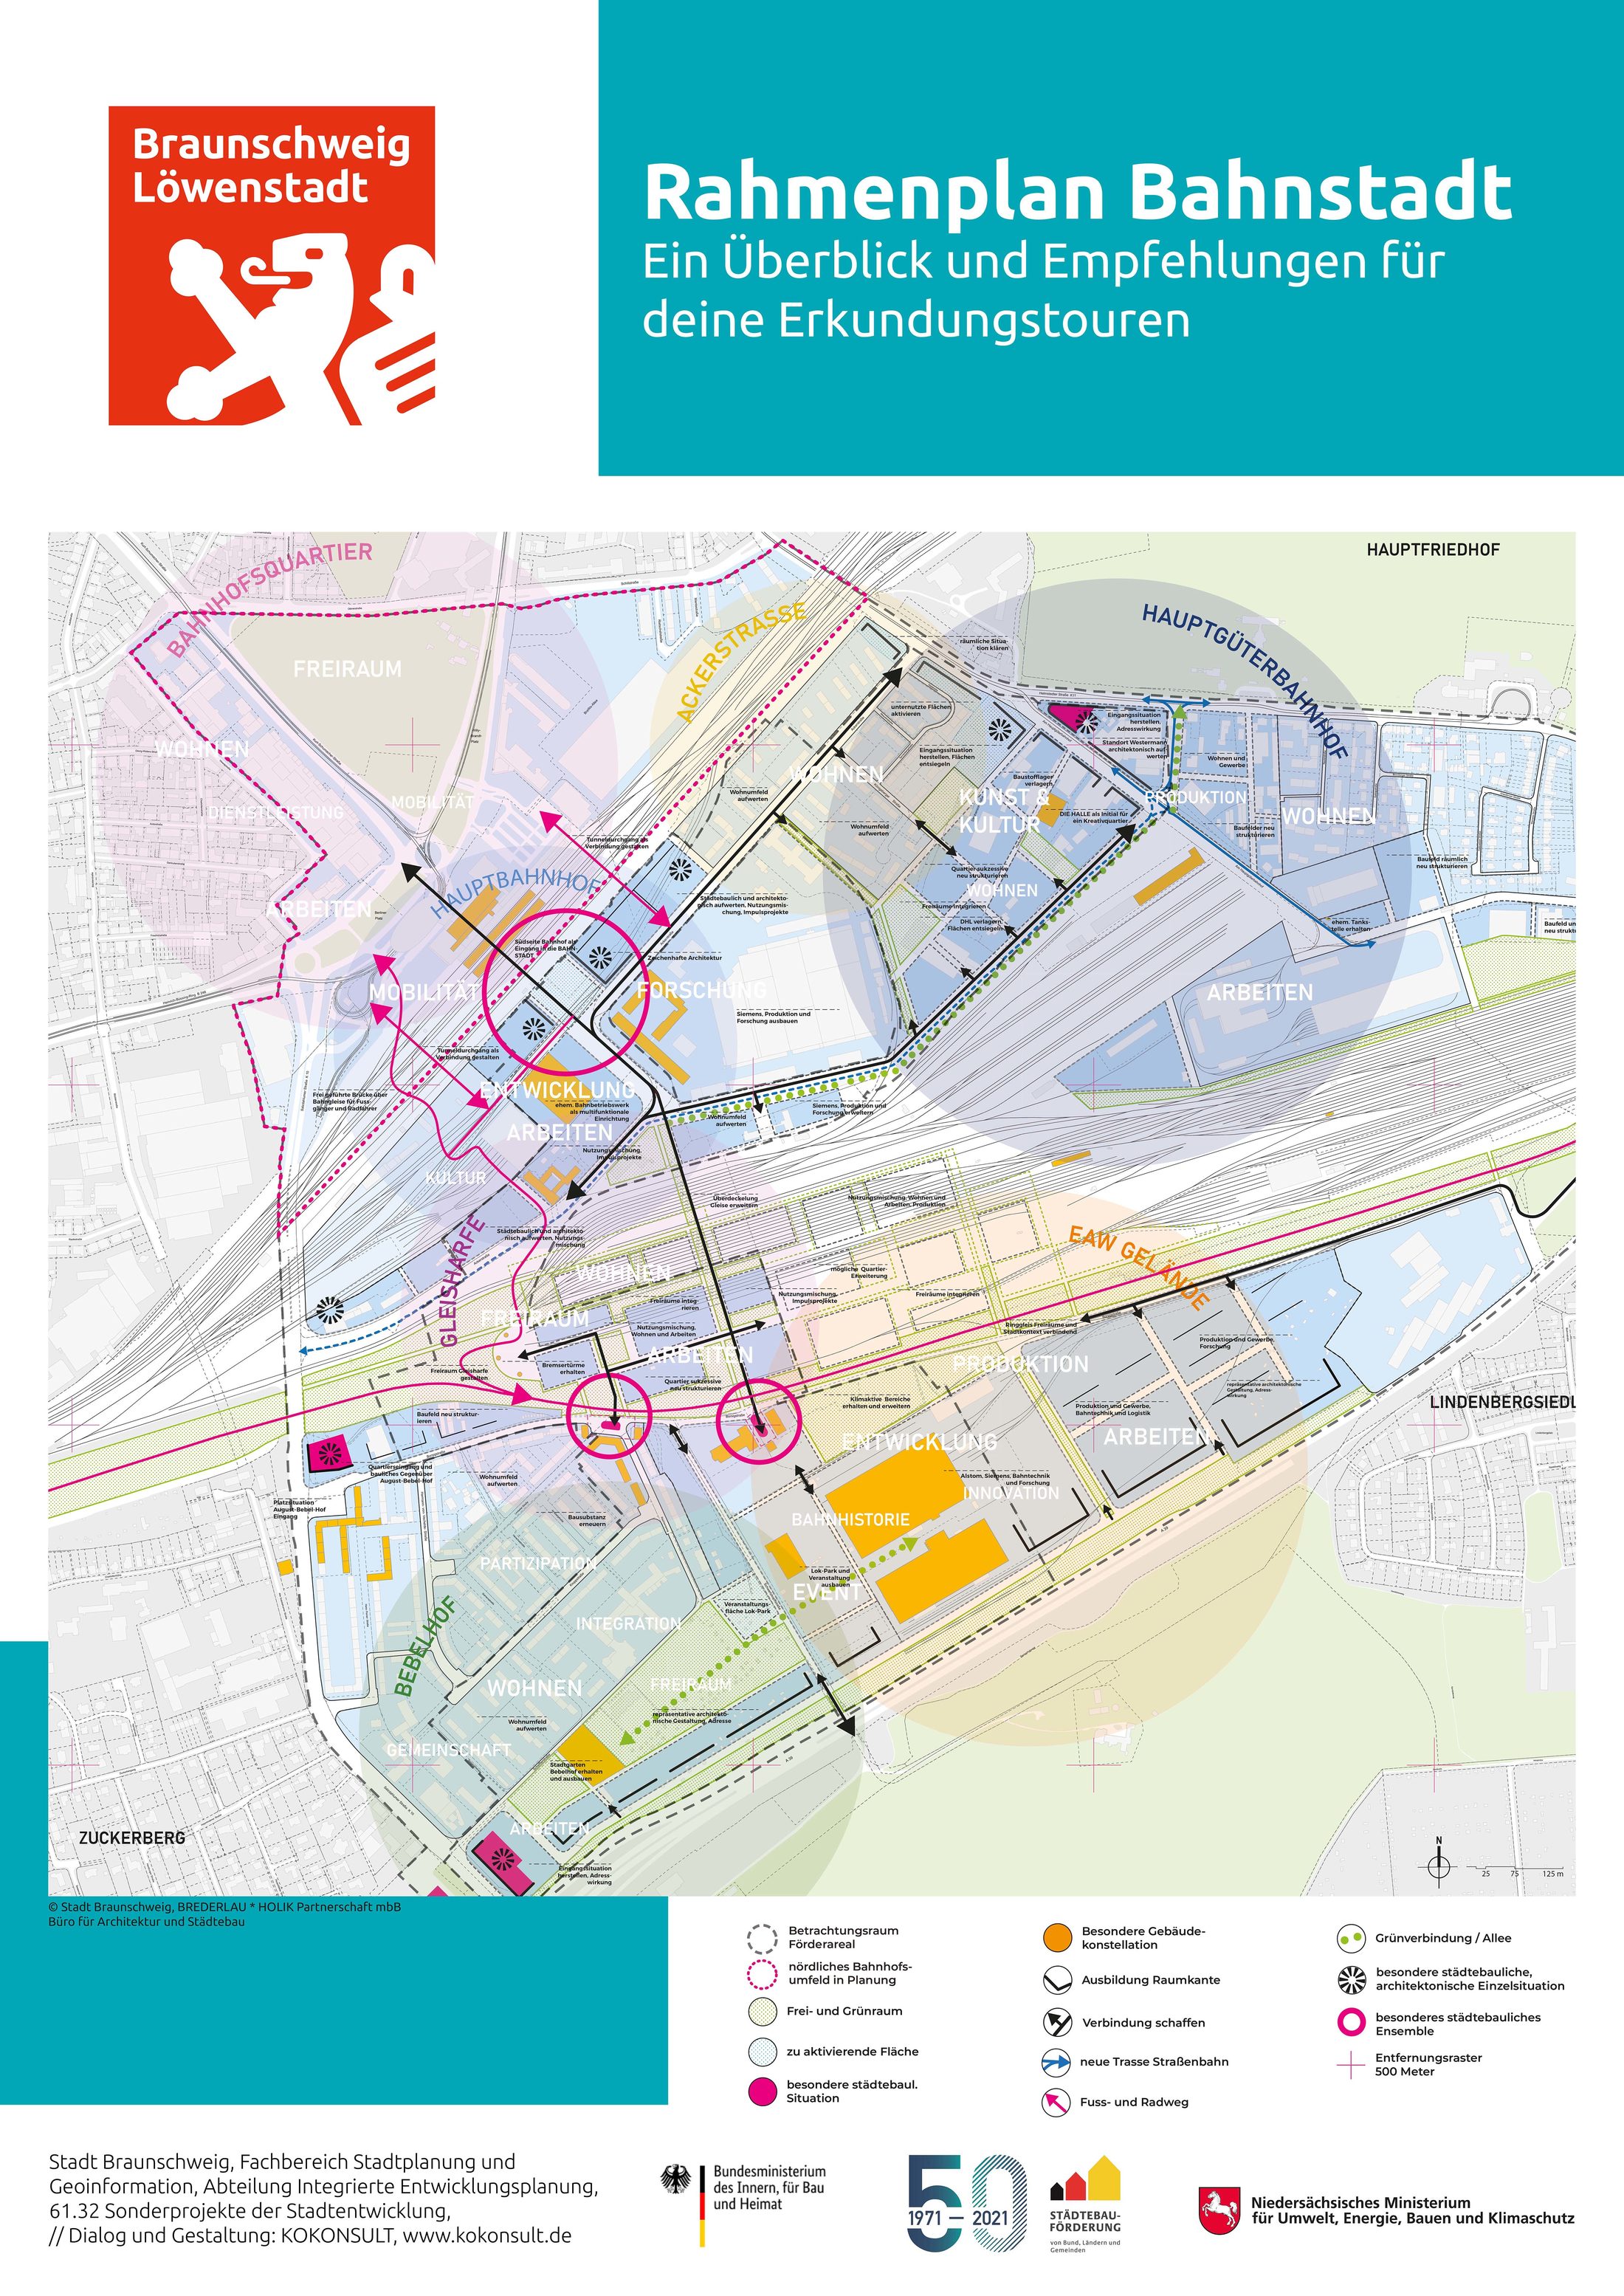 Plakat "Rahmenplanung Bahnstadt - Ein Überblick und Empfehlungen für deine Erkundungstouren"" (Wird bei Klick vergrößert)